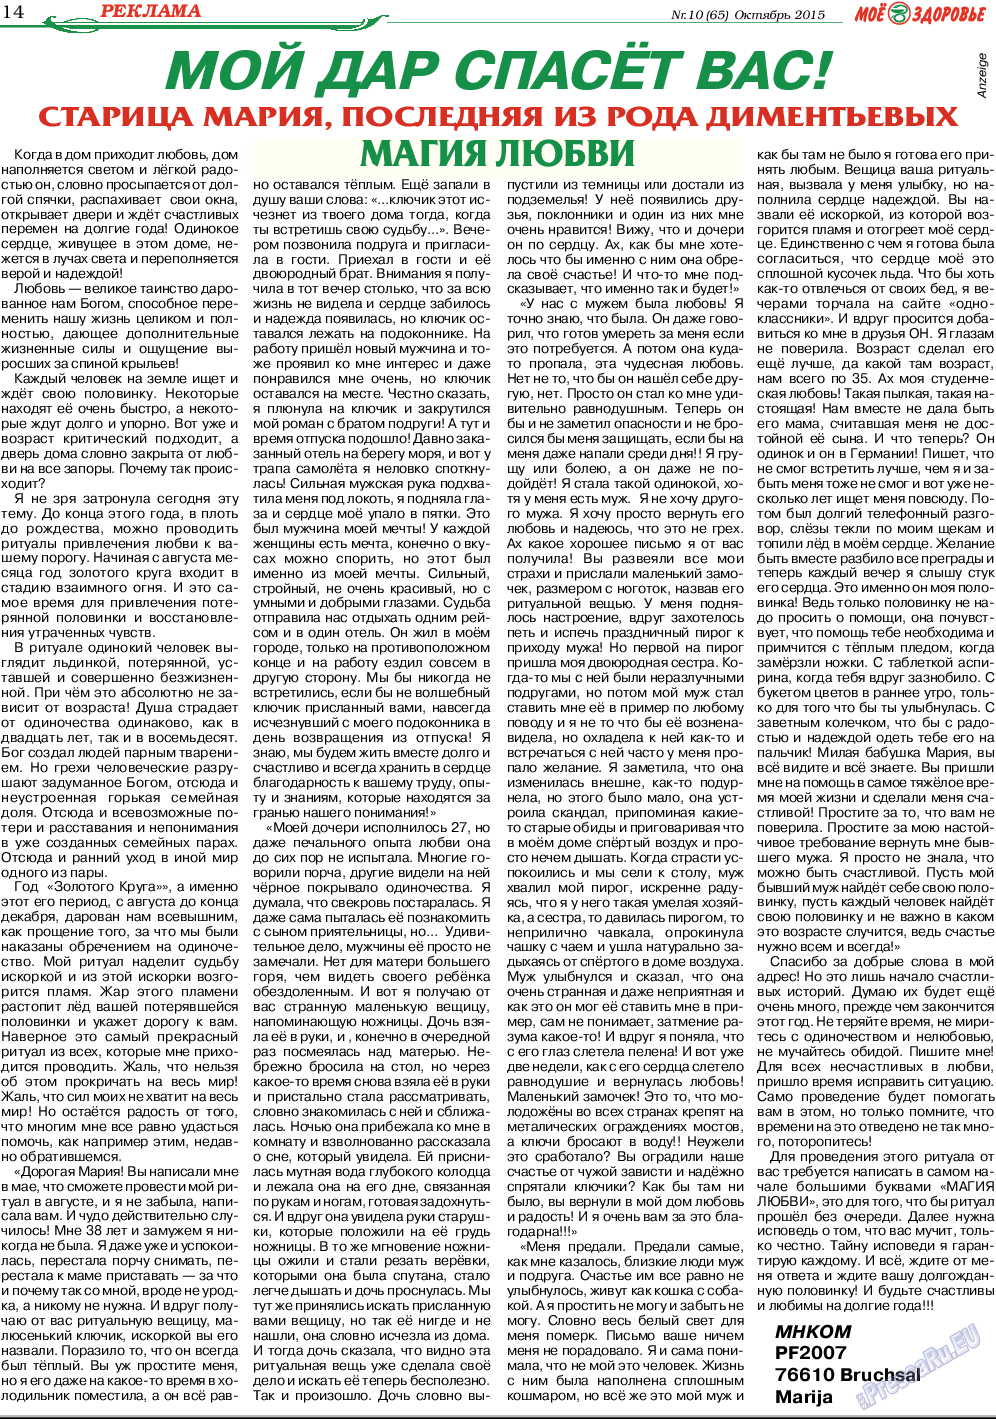 Кругозор, газета. 2015 №10 стр.14